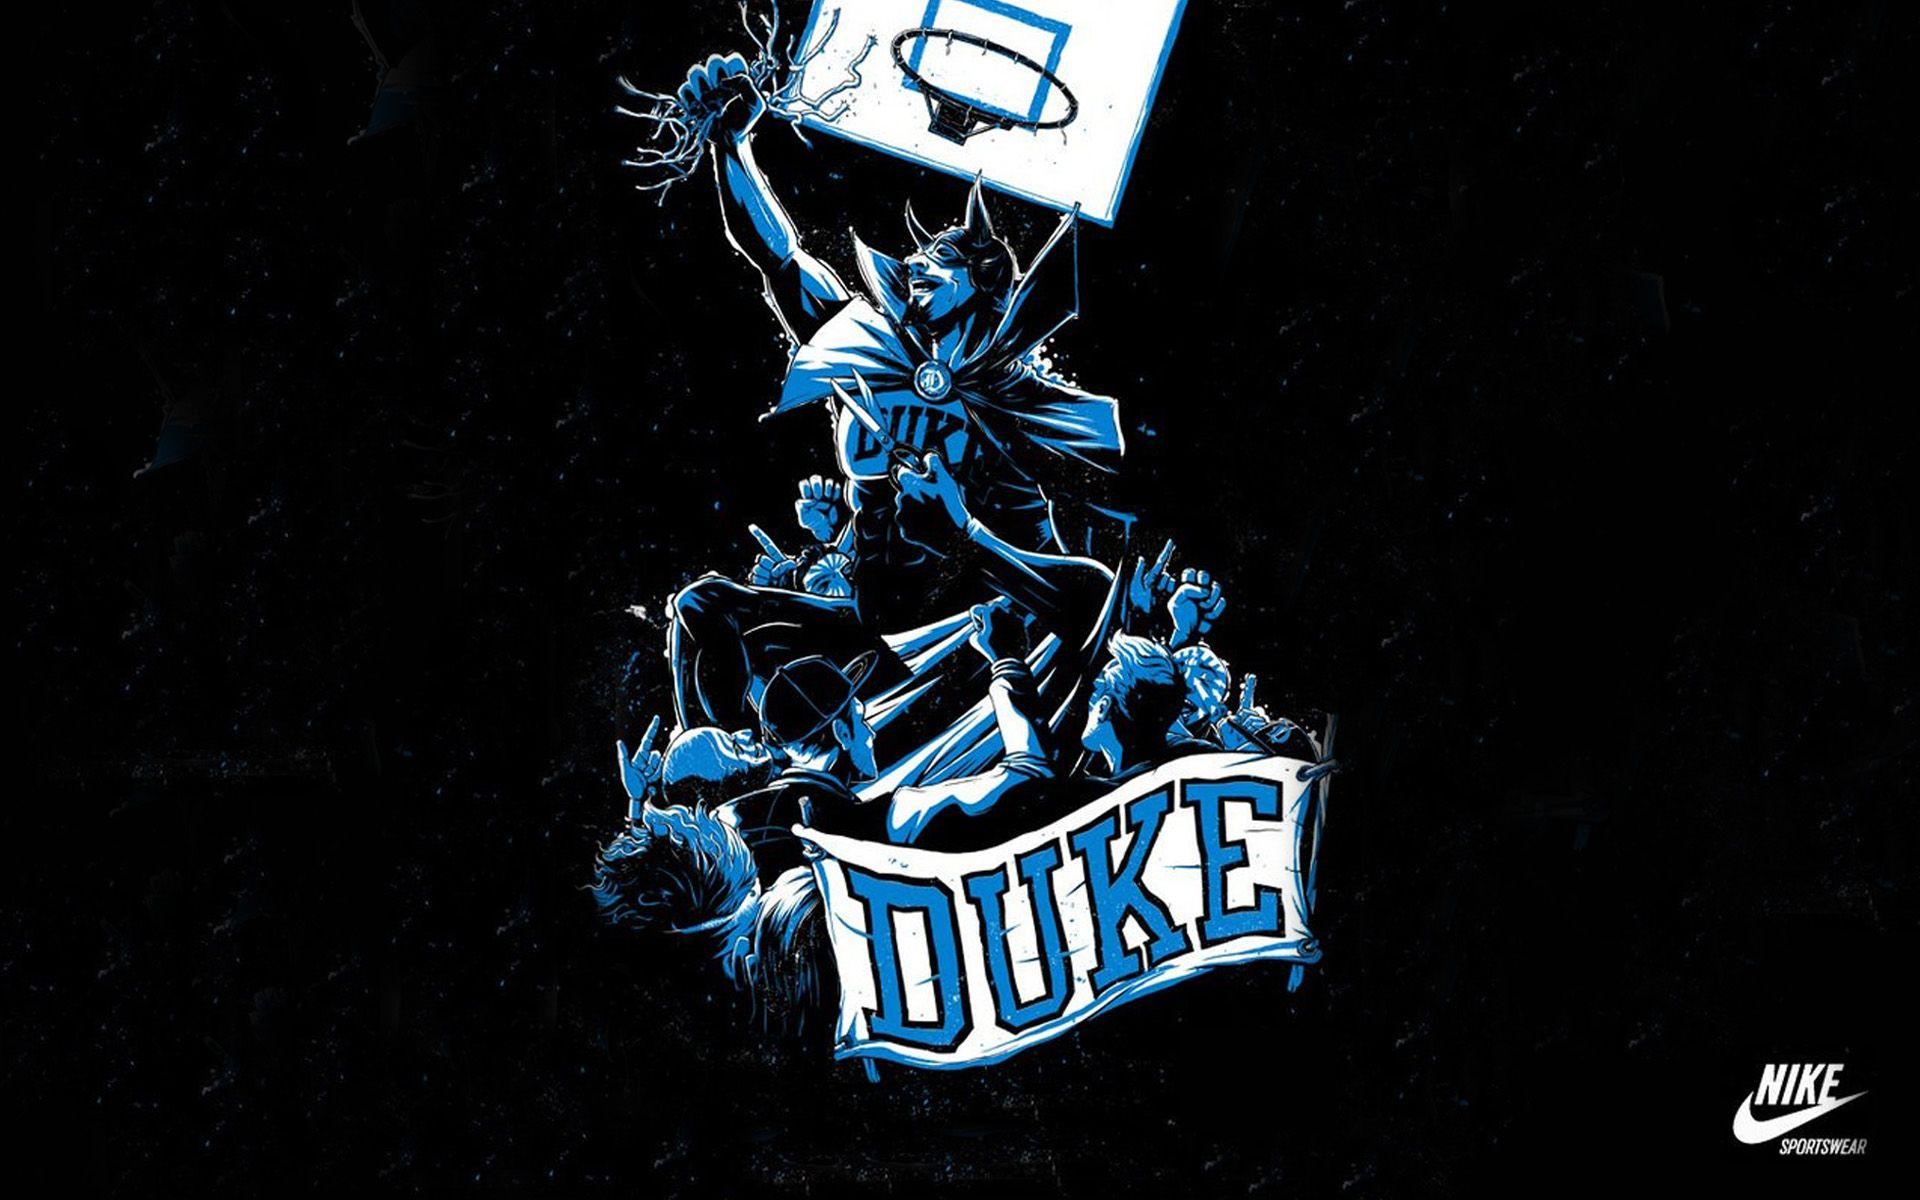 Duke Basketball Nike Logo wallpaper 2018 in Basketball